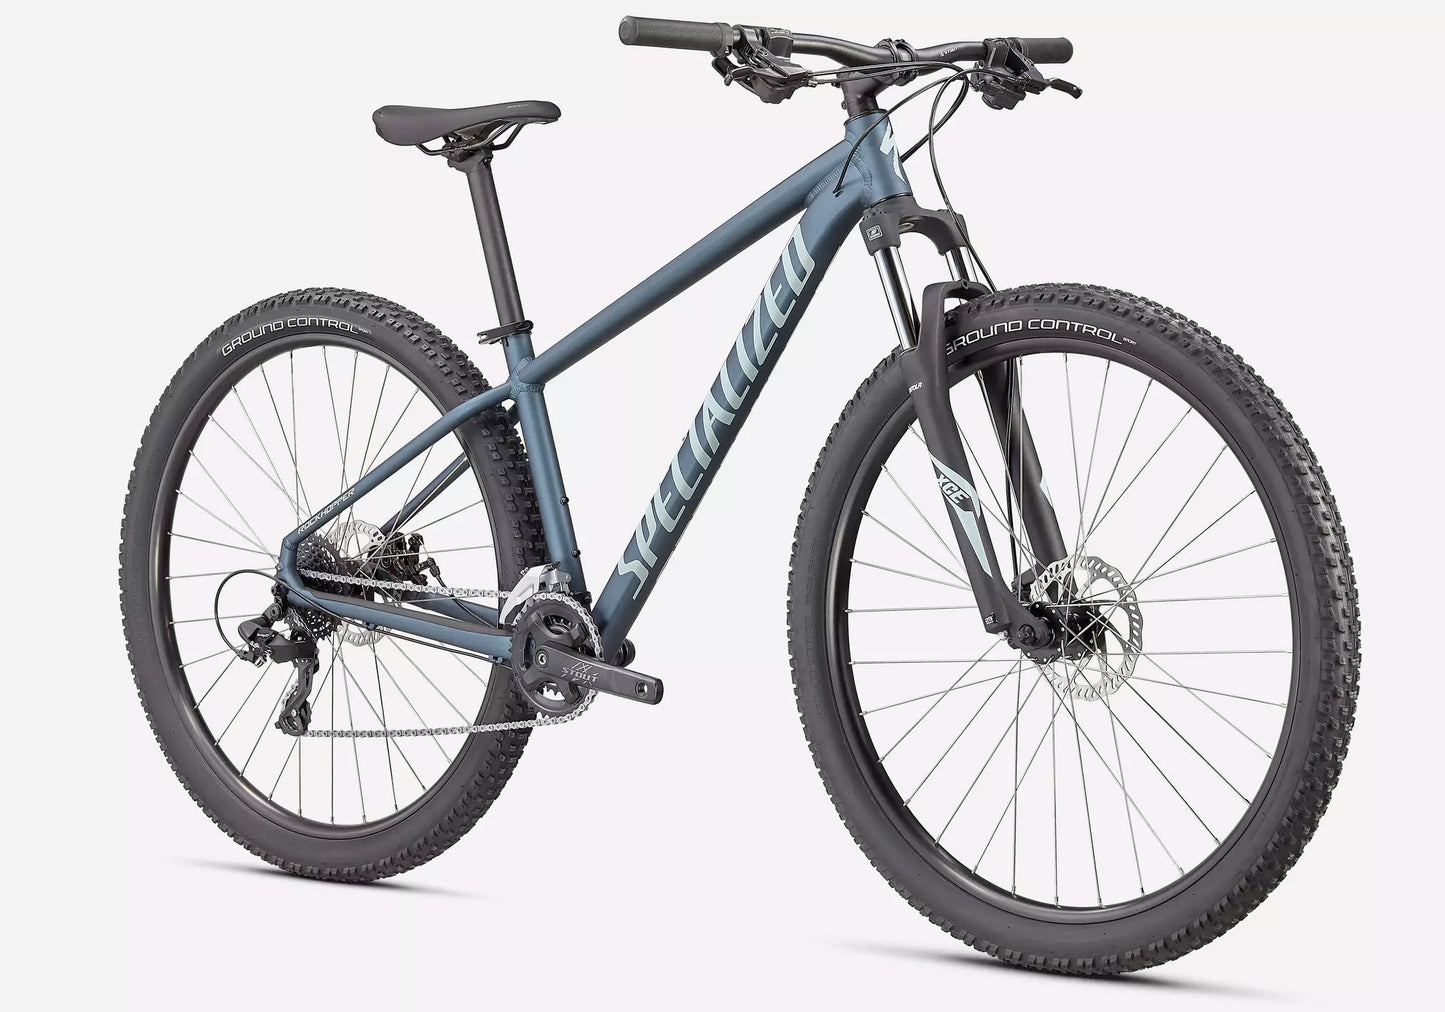 2022 Specialized Rockhopper 29 Unisex Mountain Bike - Satic Cast Blue Metallic Woolys Wheels Sydney